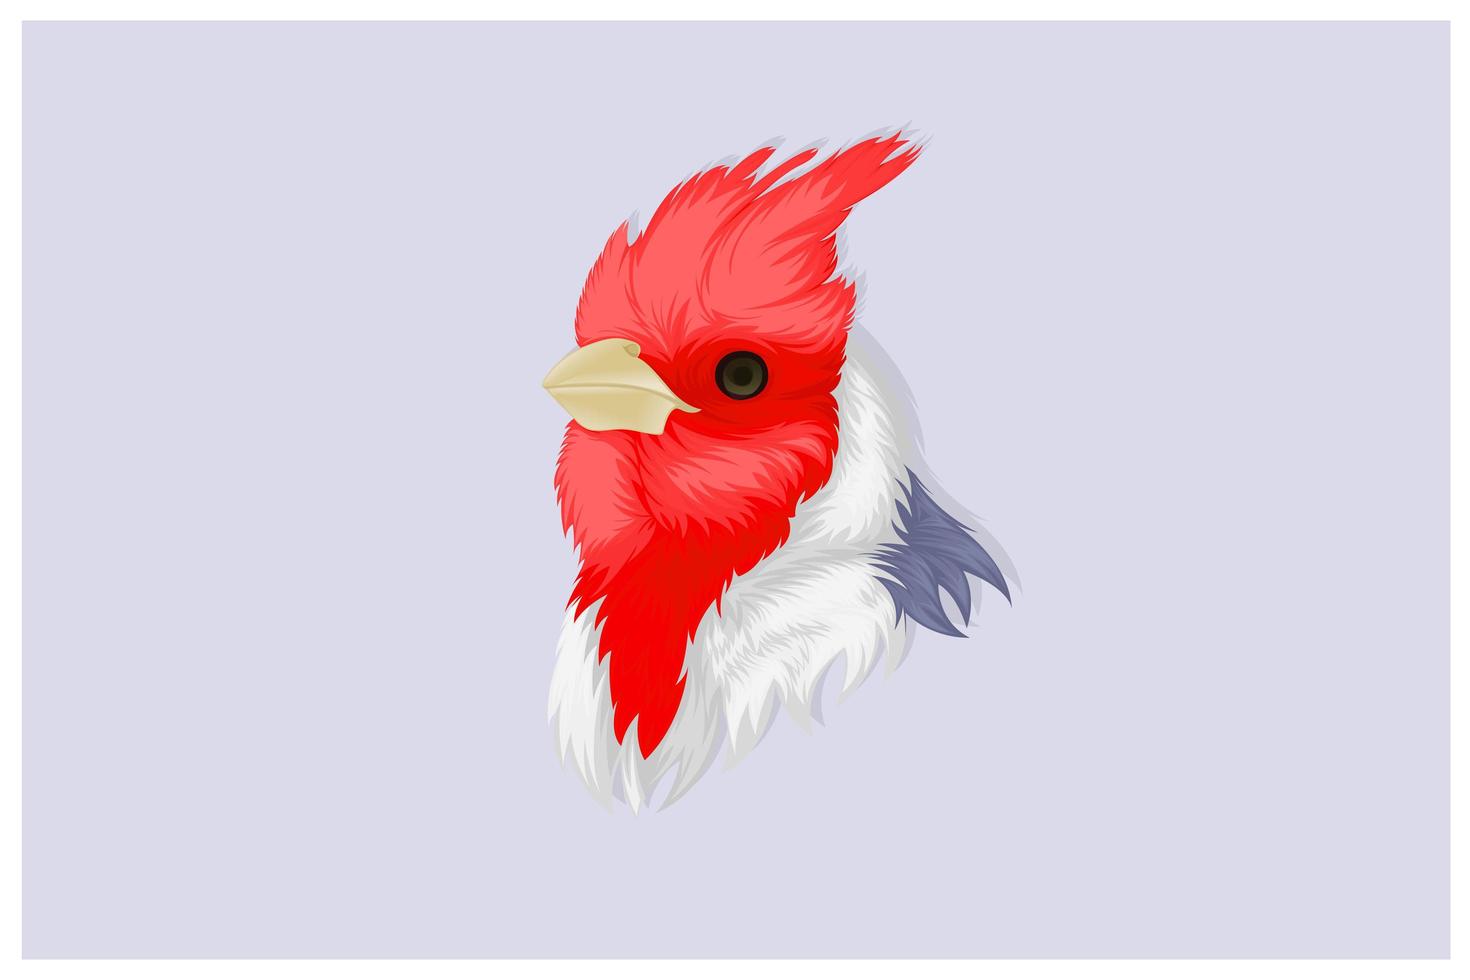 Kardinalvogelhandzeichnung im realistischen Stil vektor